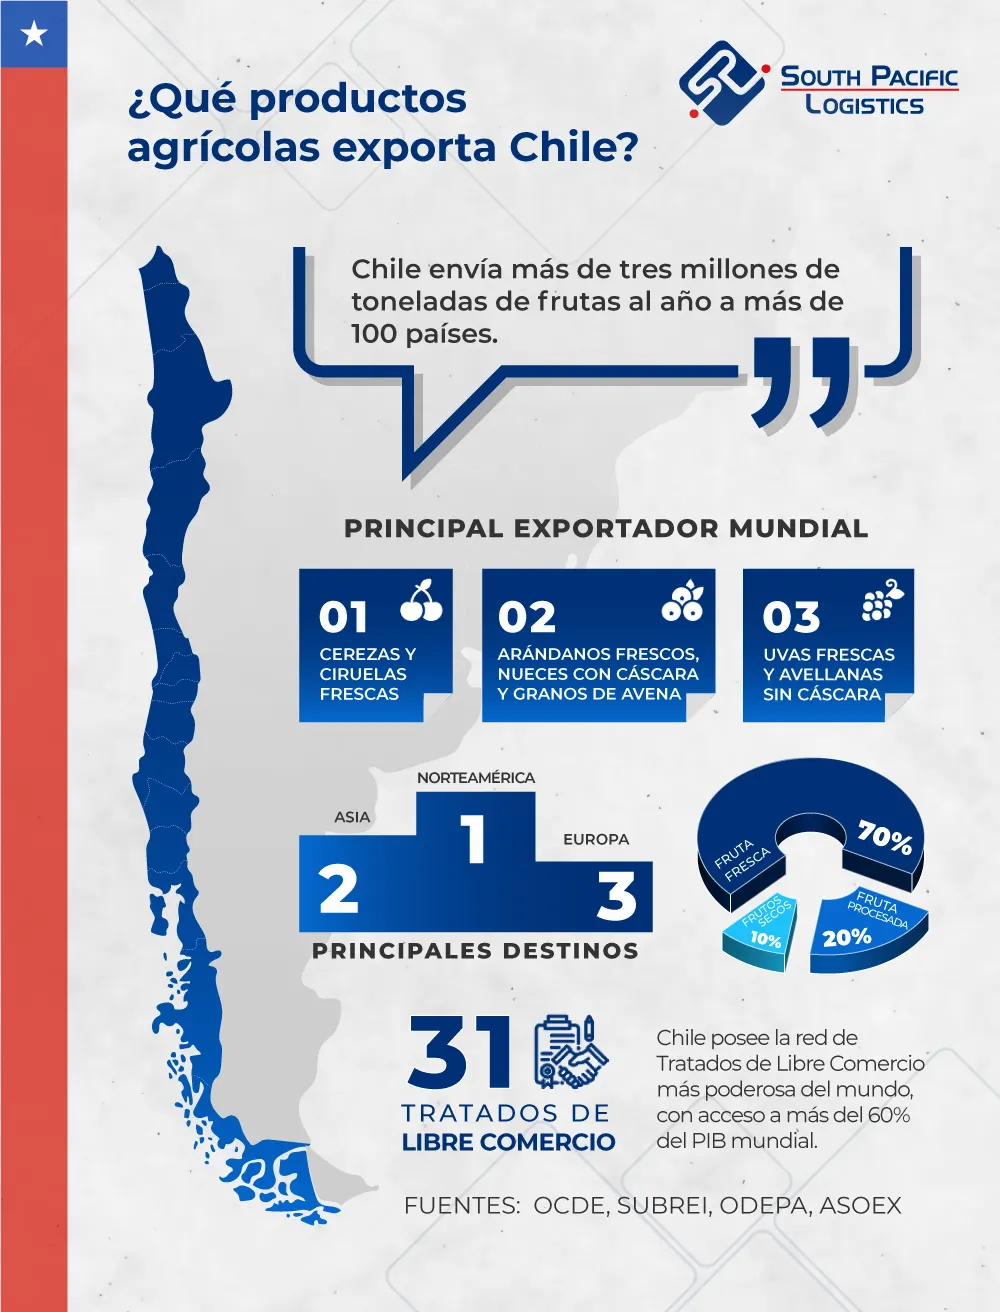 Infografia sobre los productos agricolas que exporta Chile